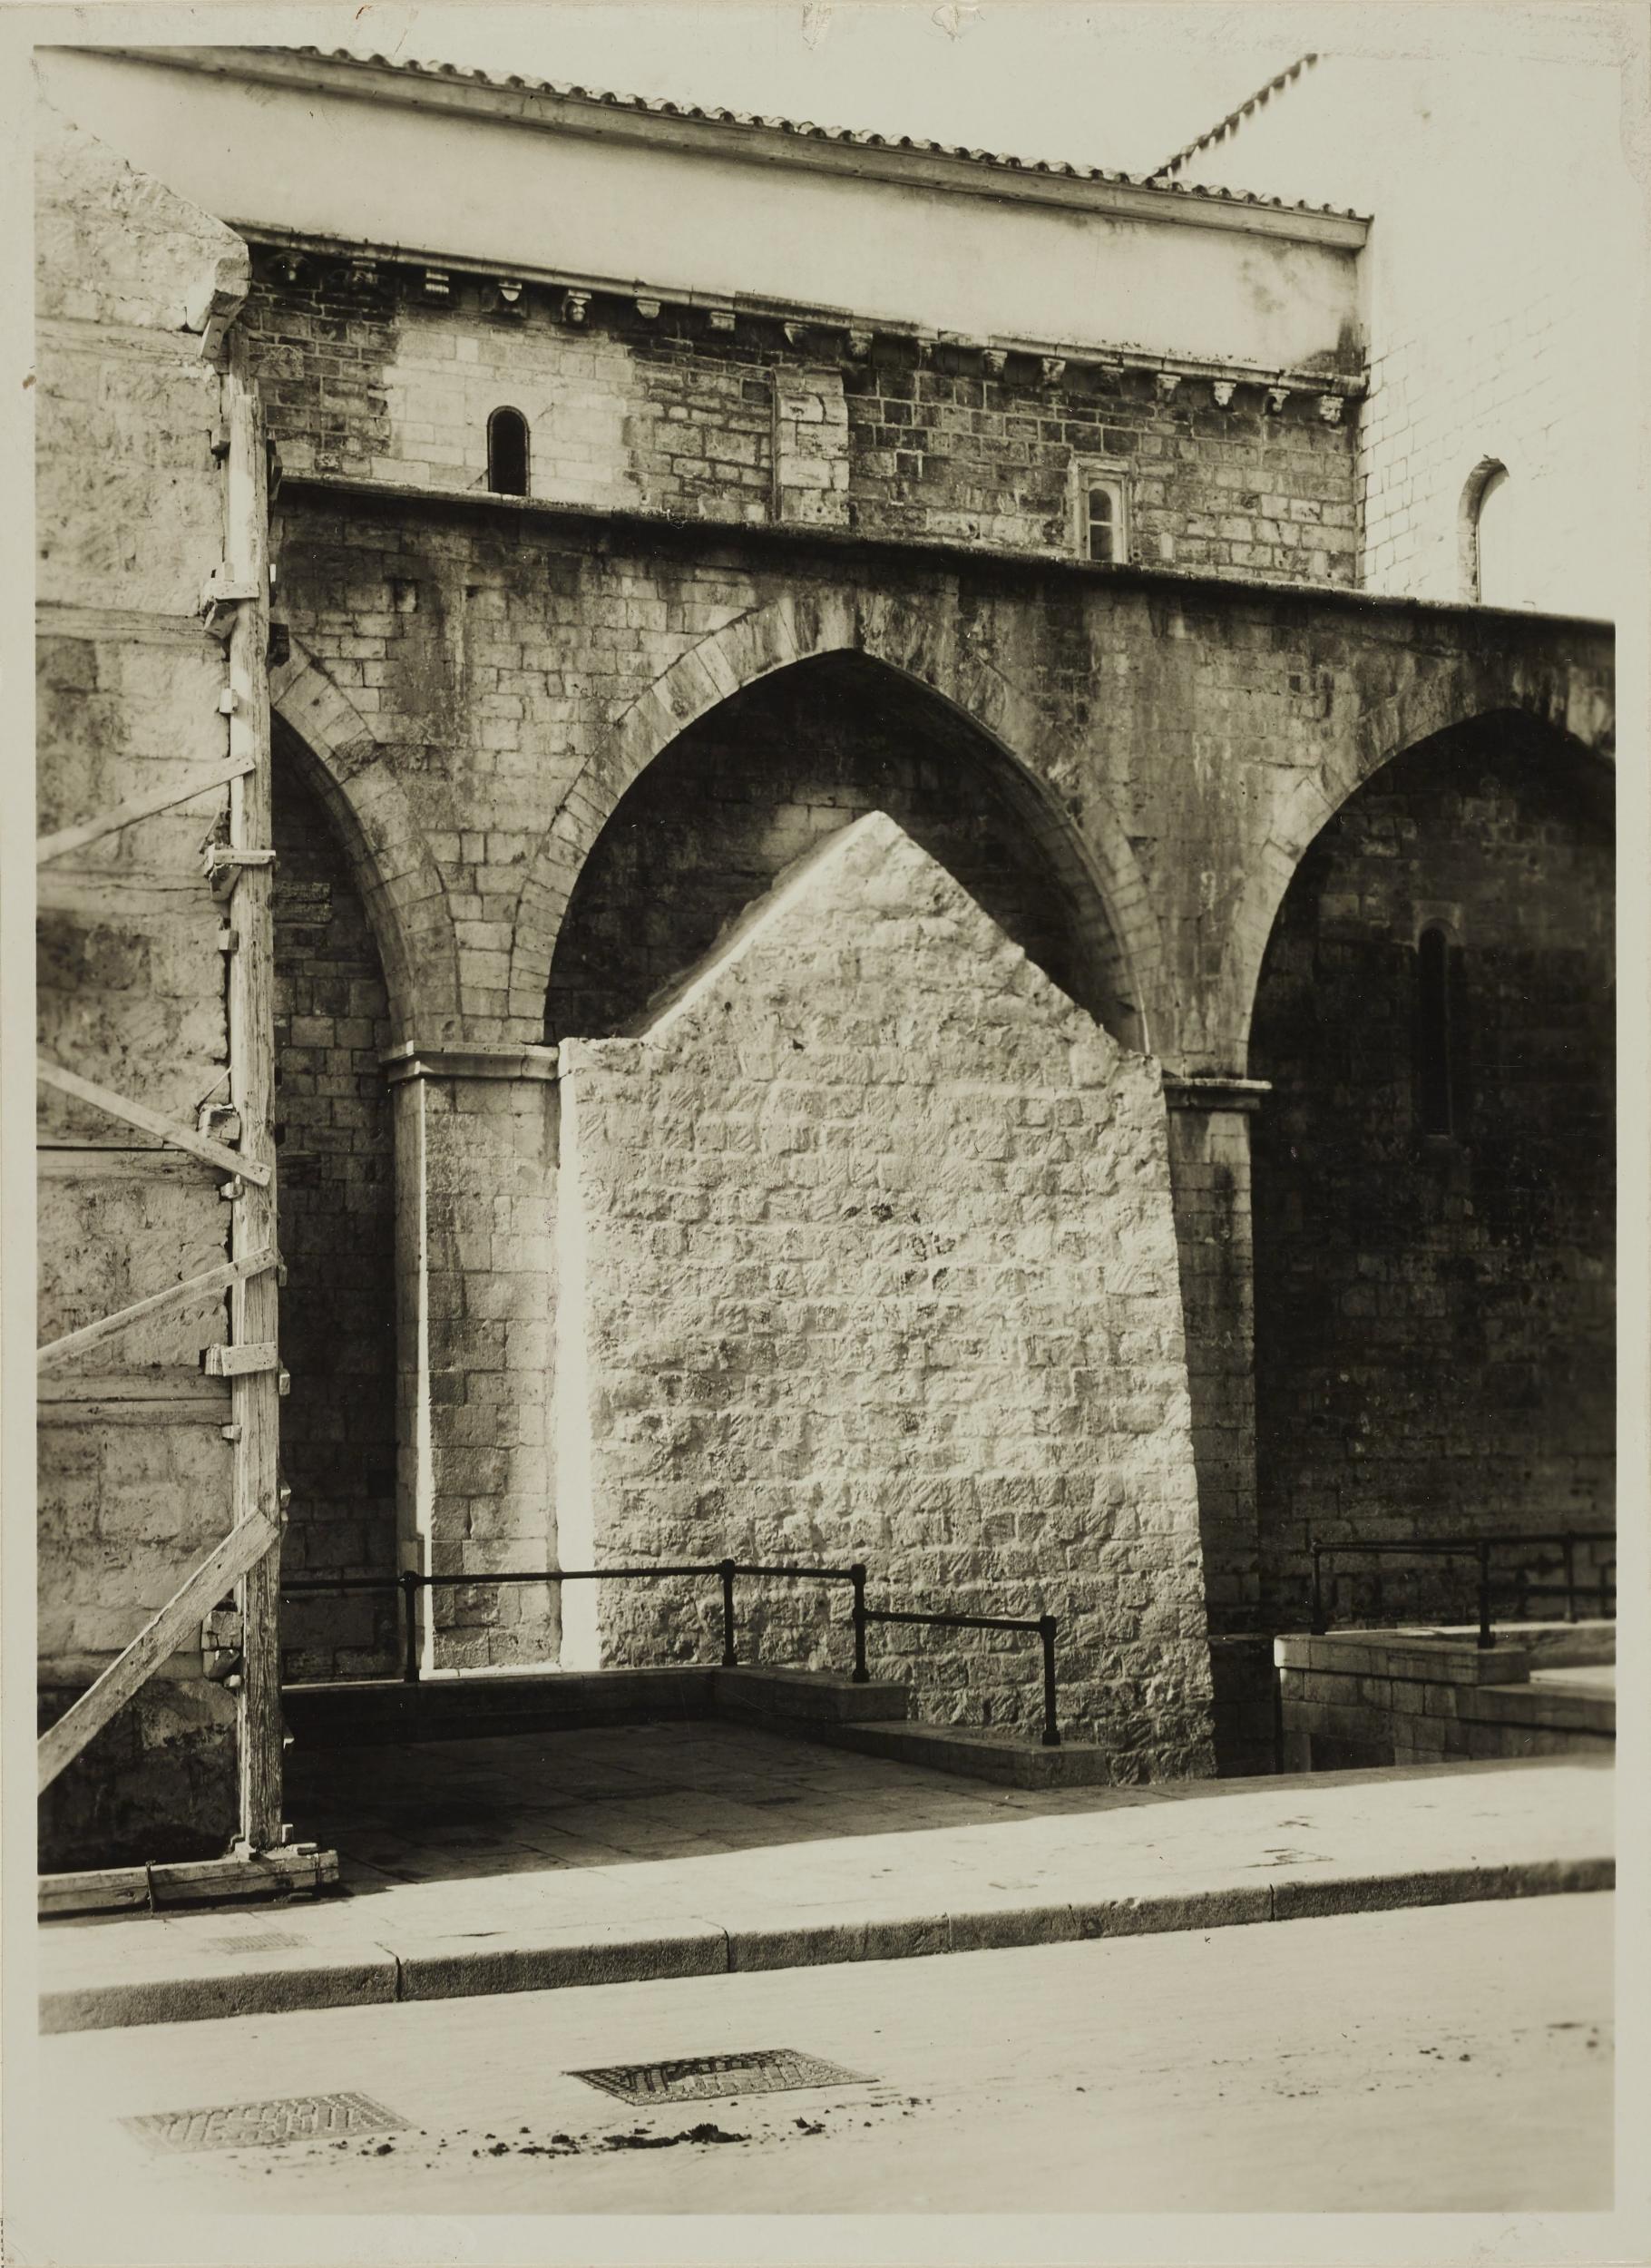 Fotografo non identificato, Barletta - Chiesa di S. Sepolcro, protezioni del portale sul fianco sinistro, 1940, gelatina ai sali d'argento/carta, MPI136922